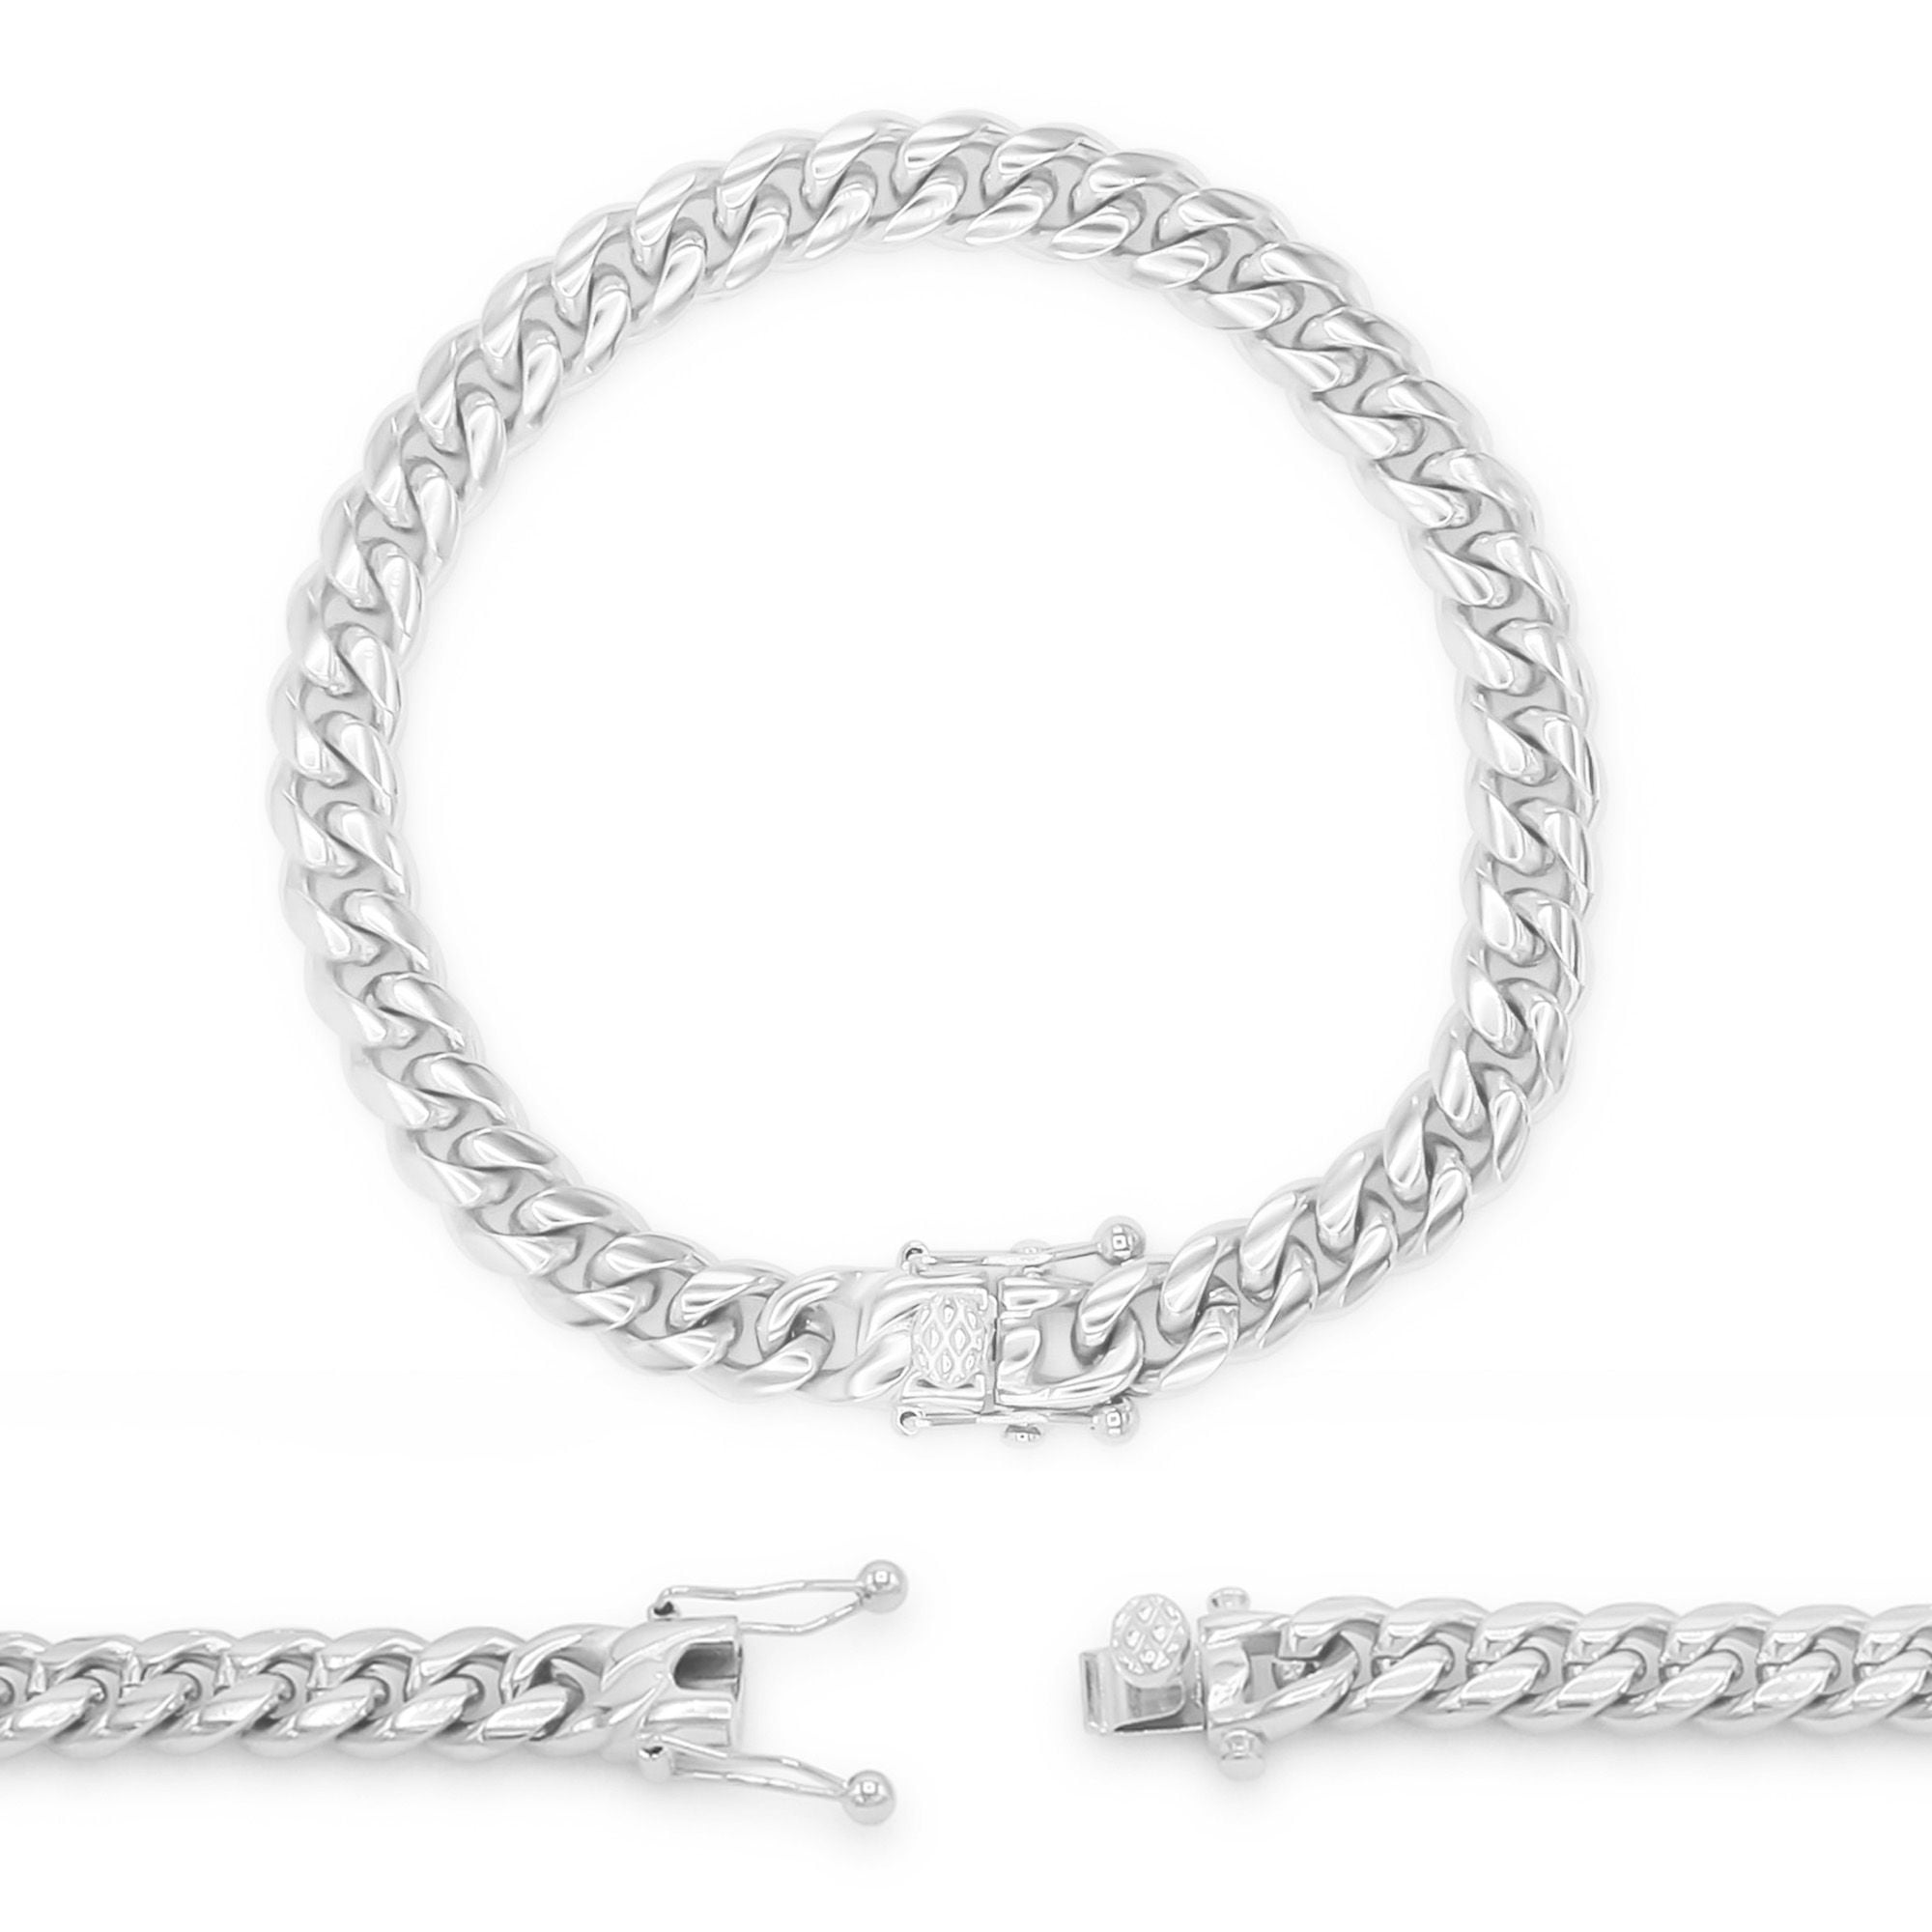 8.5"  Fashion Men's Bracelet Jewelry Stainless Steel Link Chain Bracelet